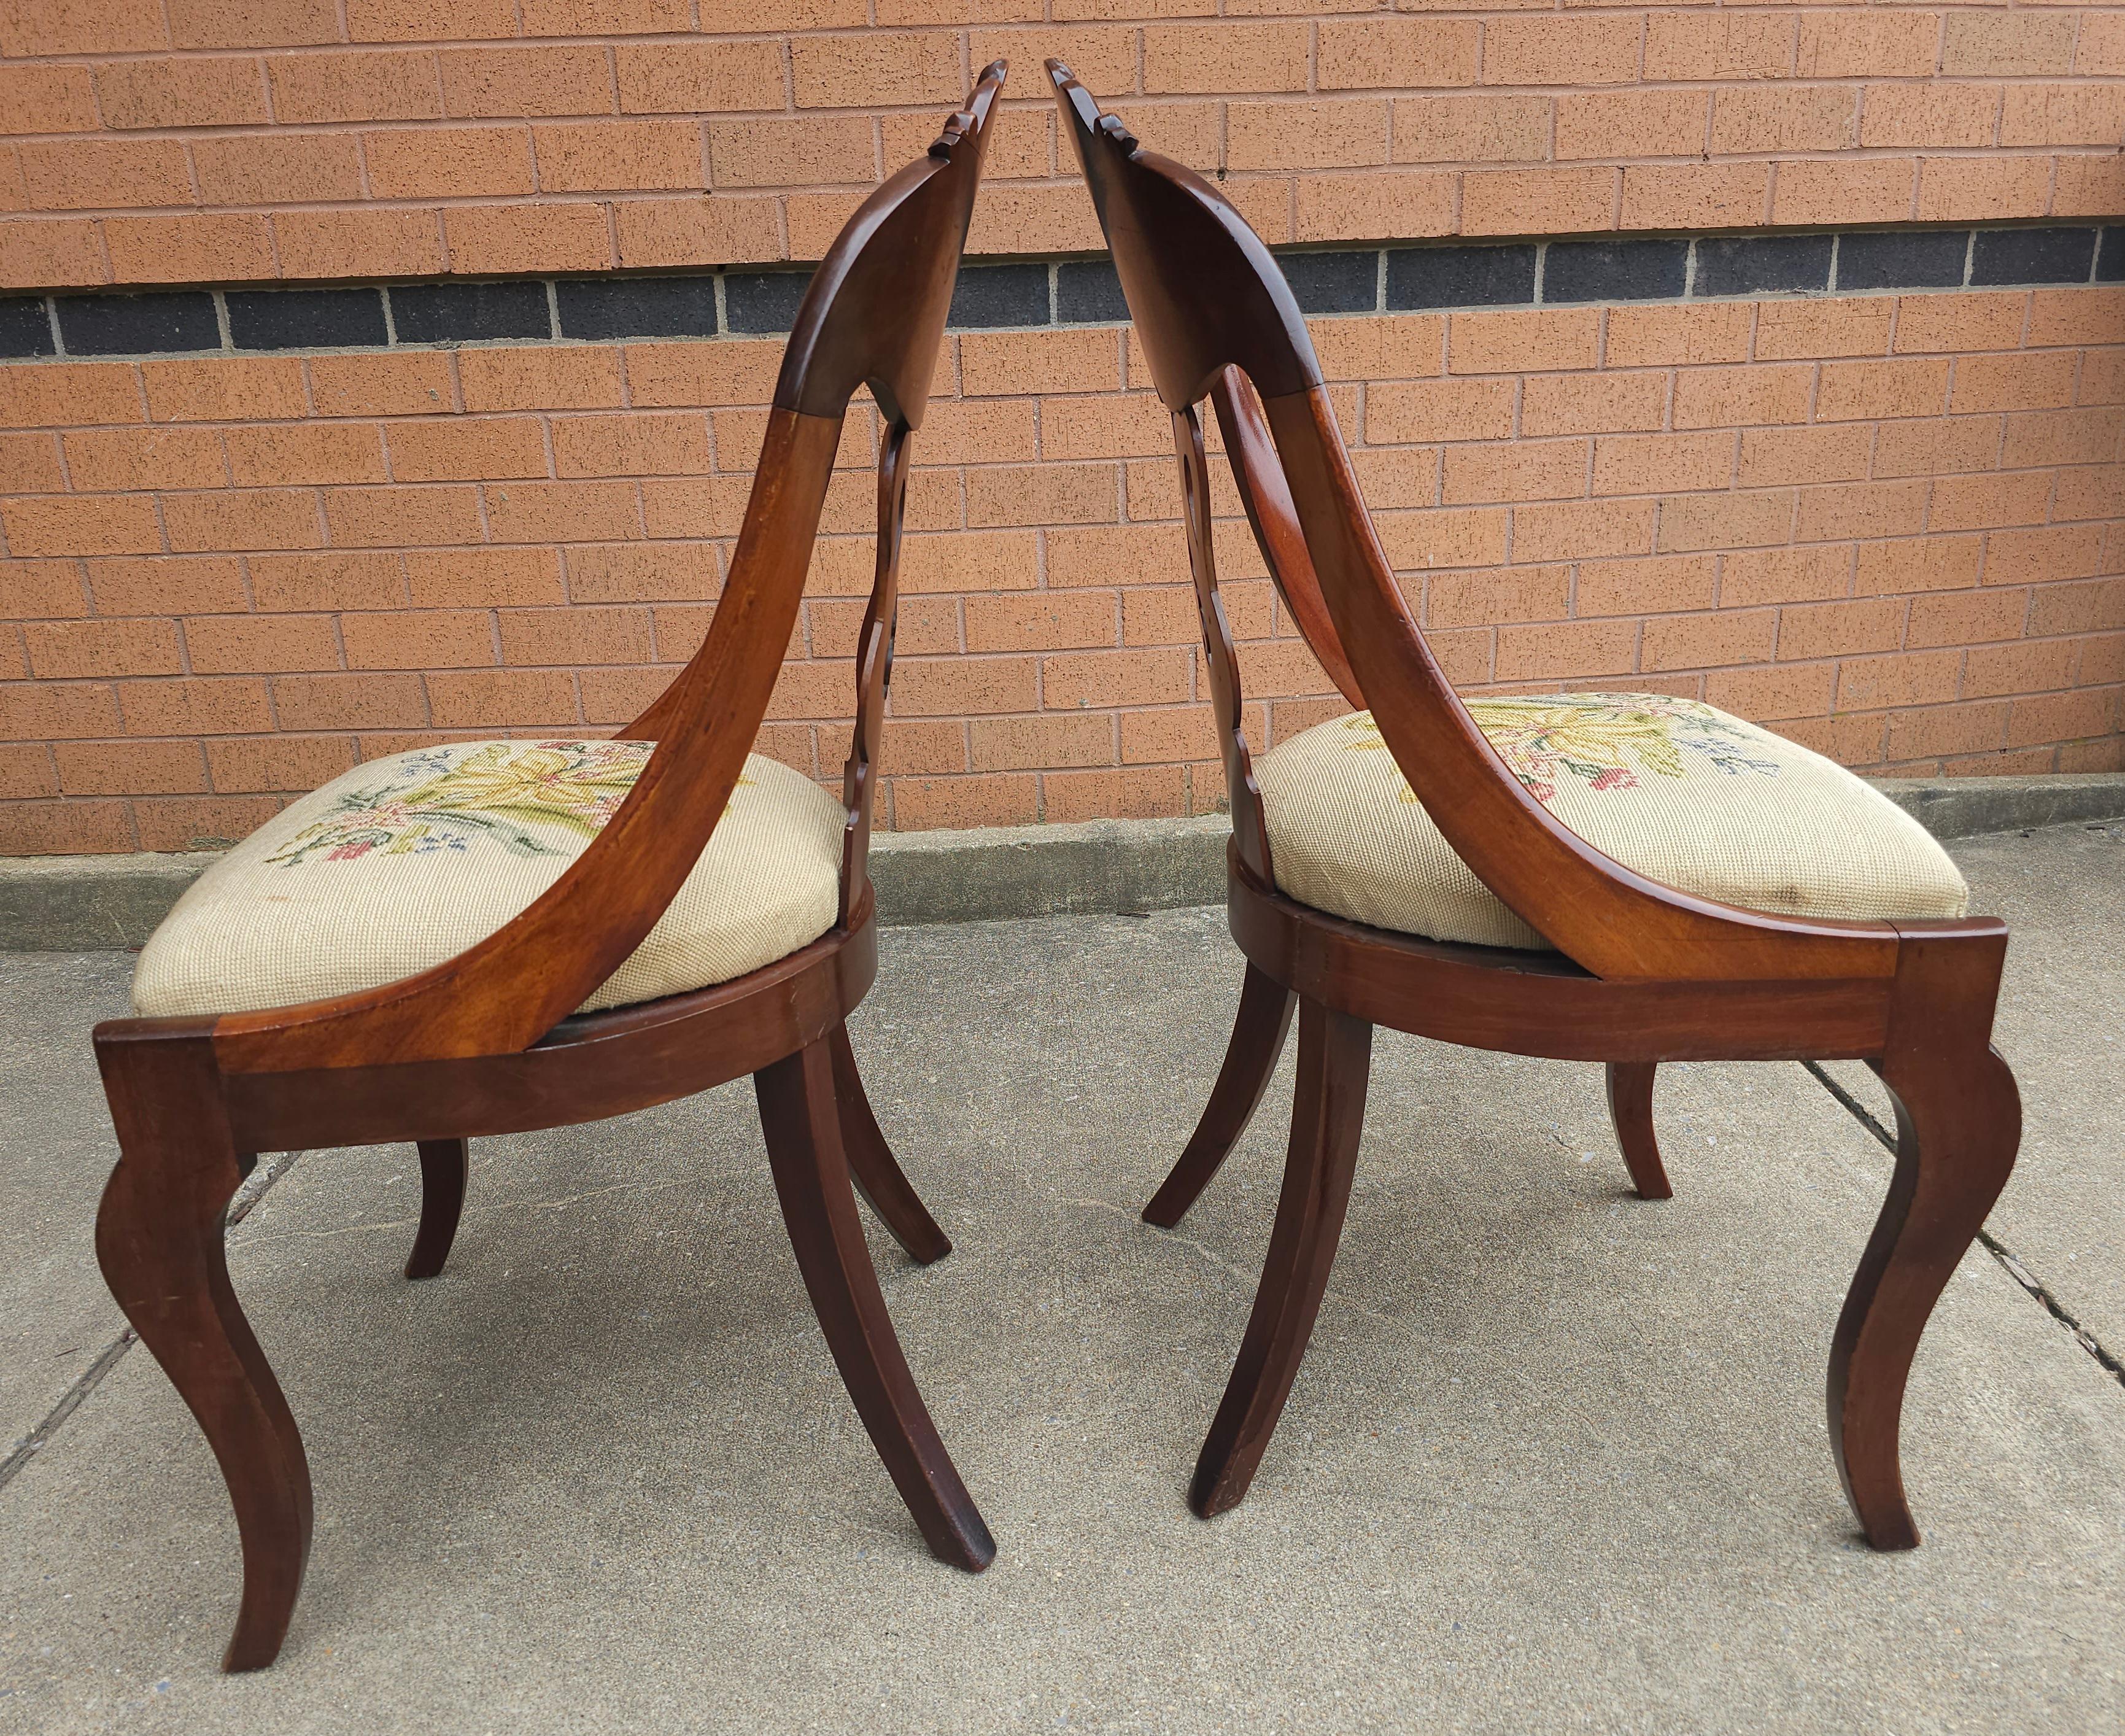 Paar 19. Jahrhundert American Empire geschnitzt Magogany und gepolsterte Stühle. Messen Sie 18,25